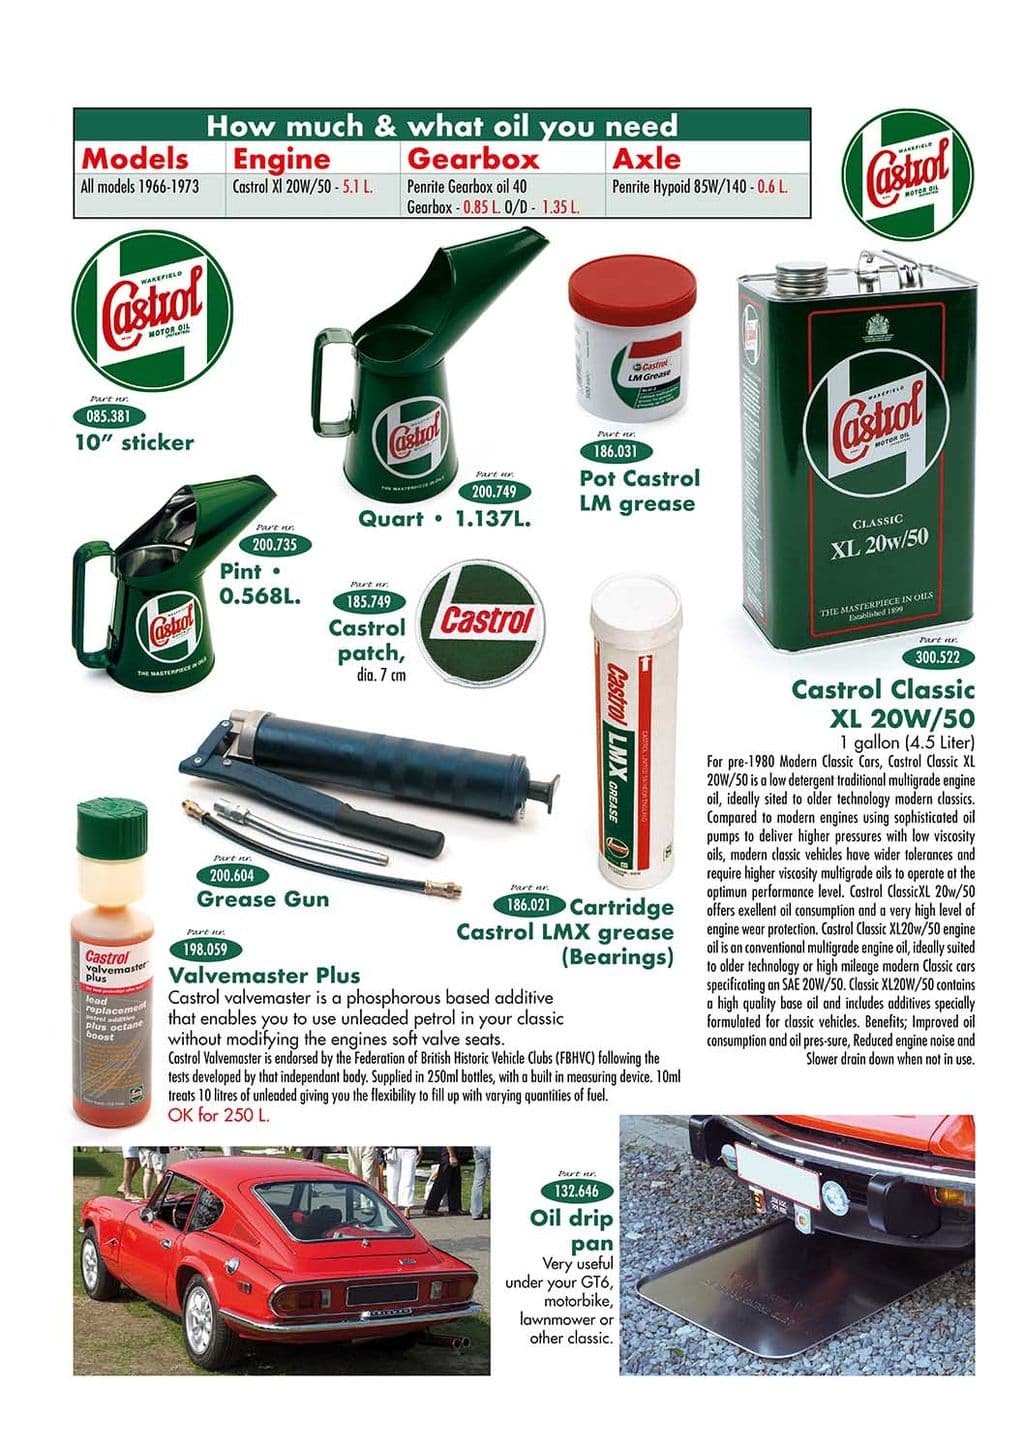 Oil cans & drip pan - Dropp plåtar - Underhåll och förvaring - Jaguar XJ6-12 / Daimler Sovereign, D6 1968-'92 - Oil cans & drip pan - 1